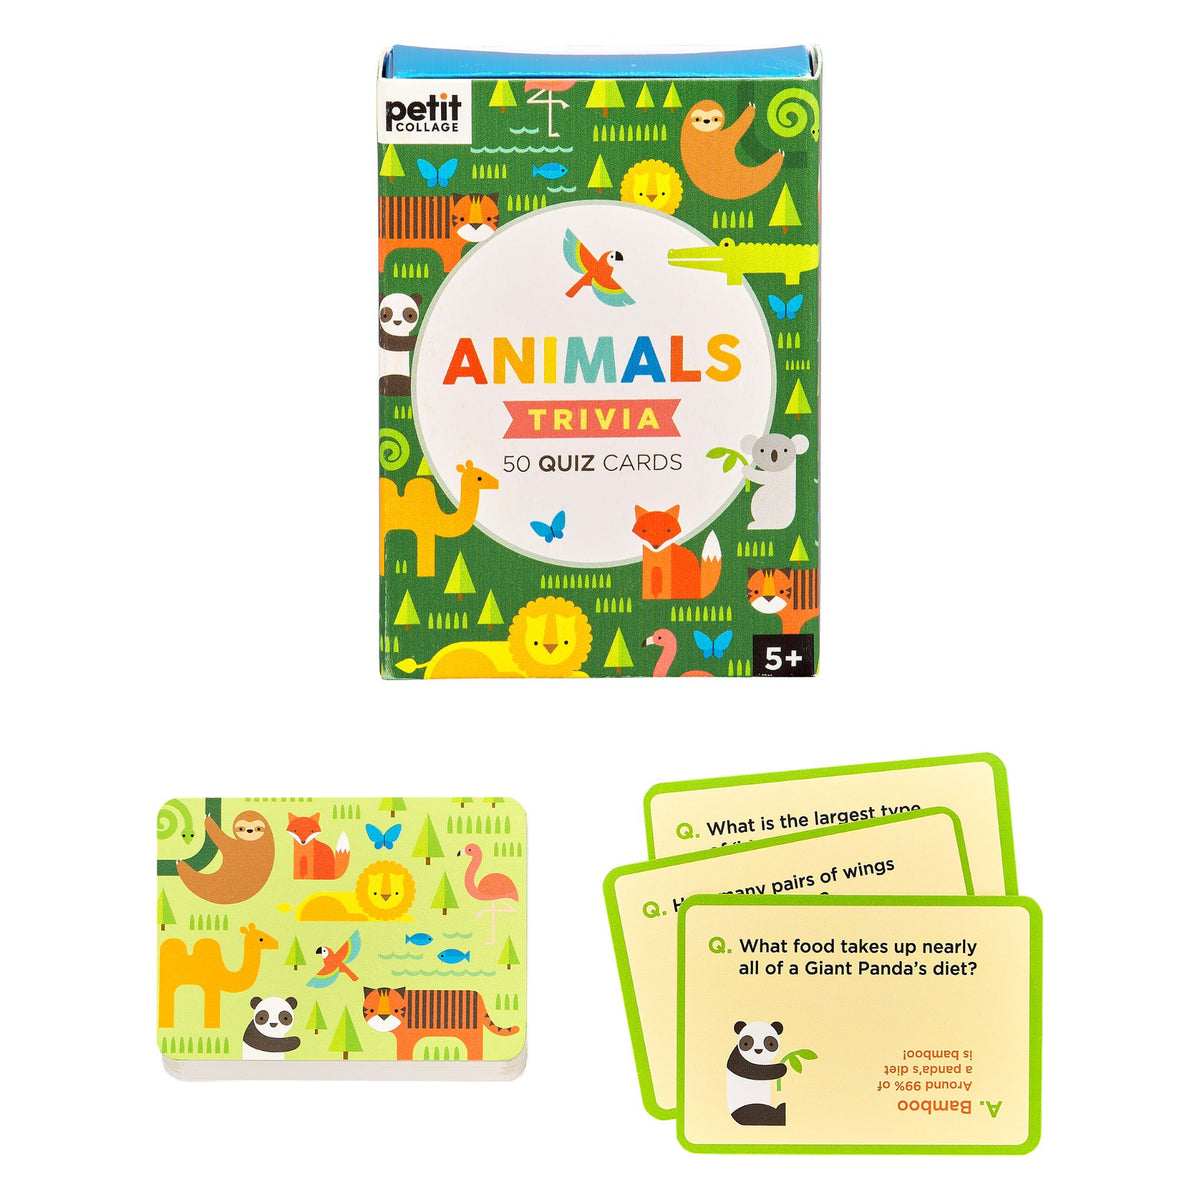 Petit Collage Animal Trivia Quiz Cards